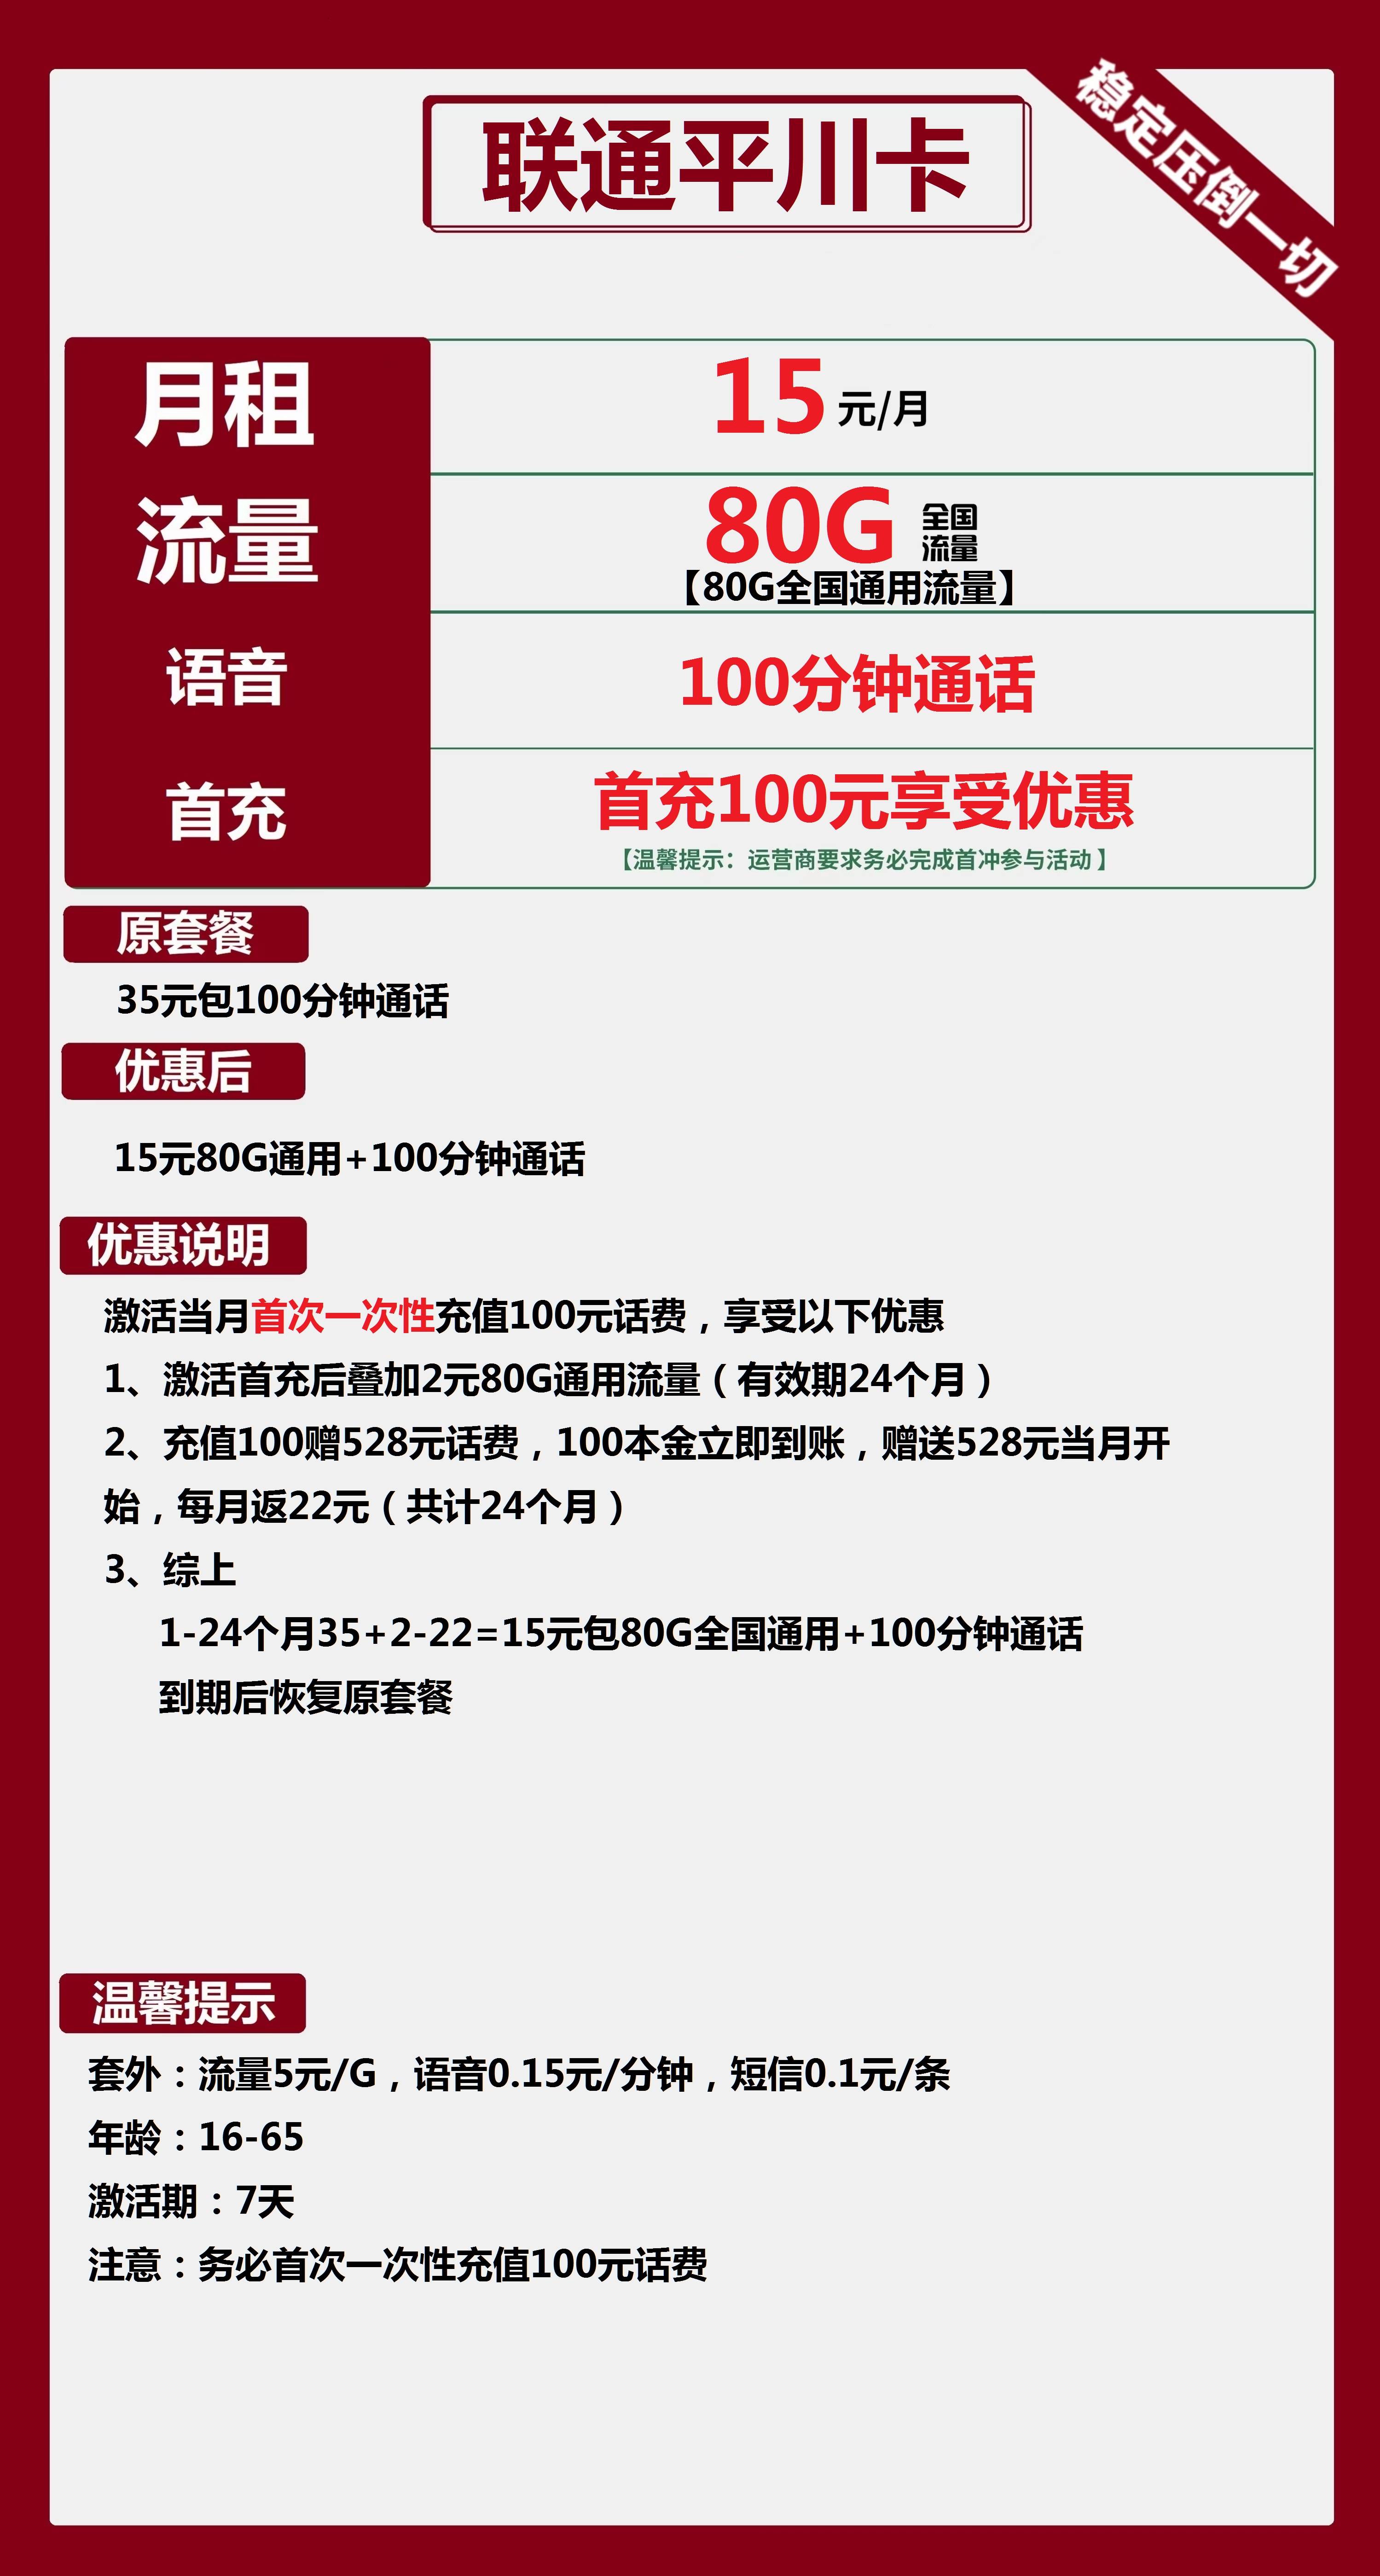 【两年优惠】联通平川卡15元包80G通用+100分钟通话